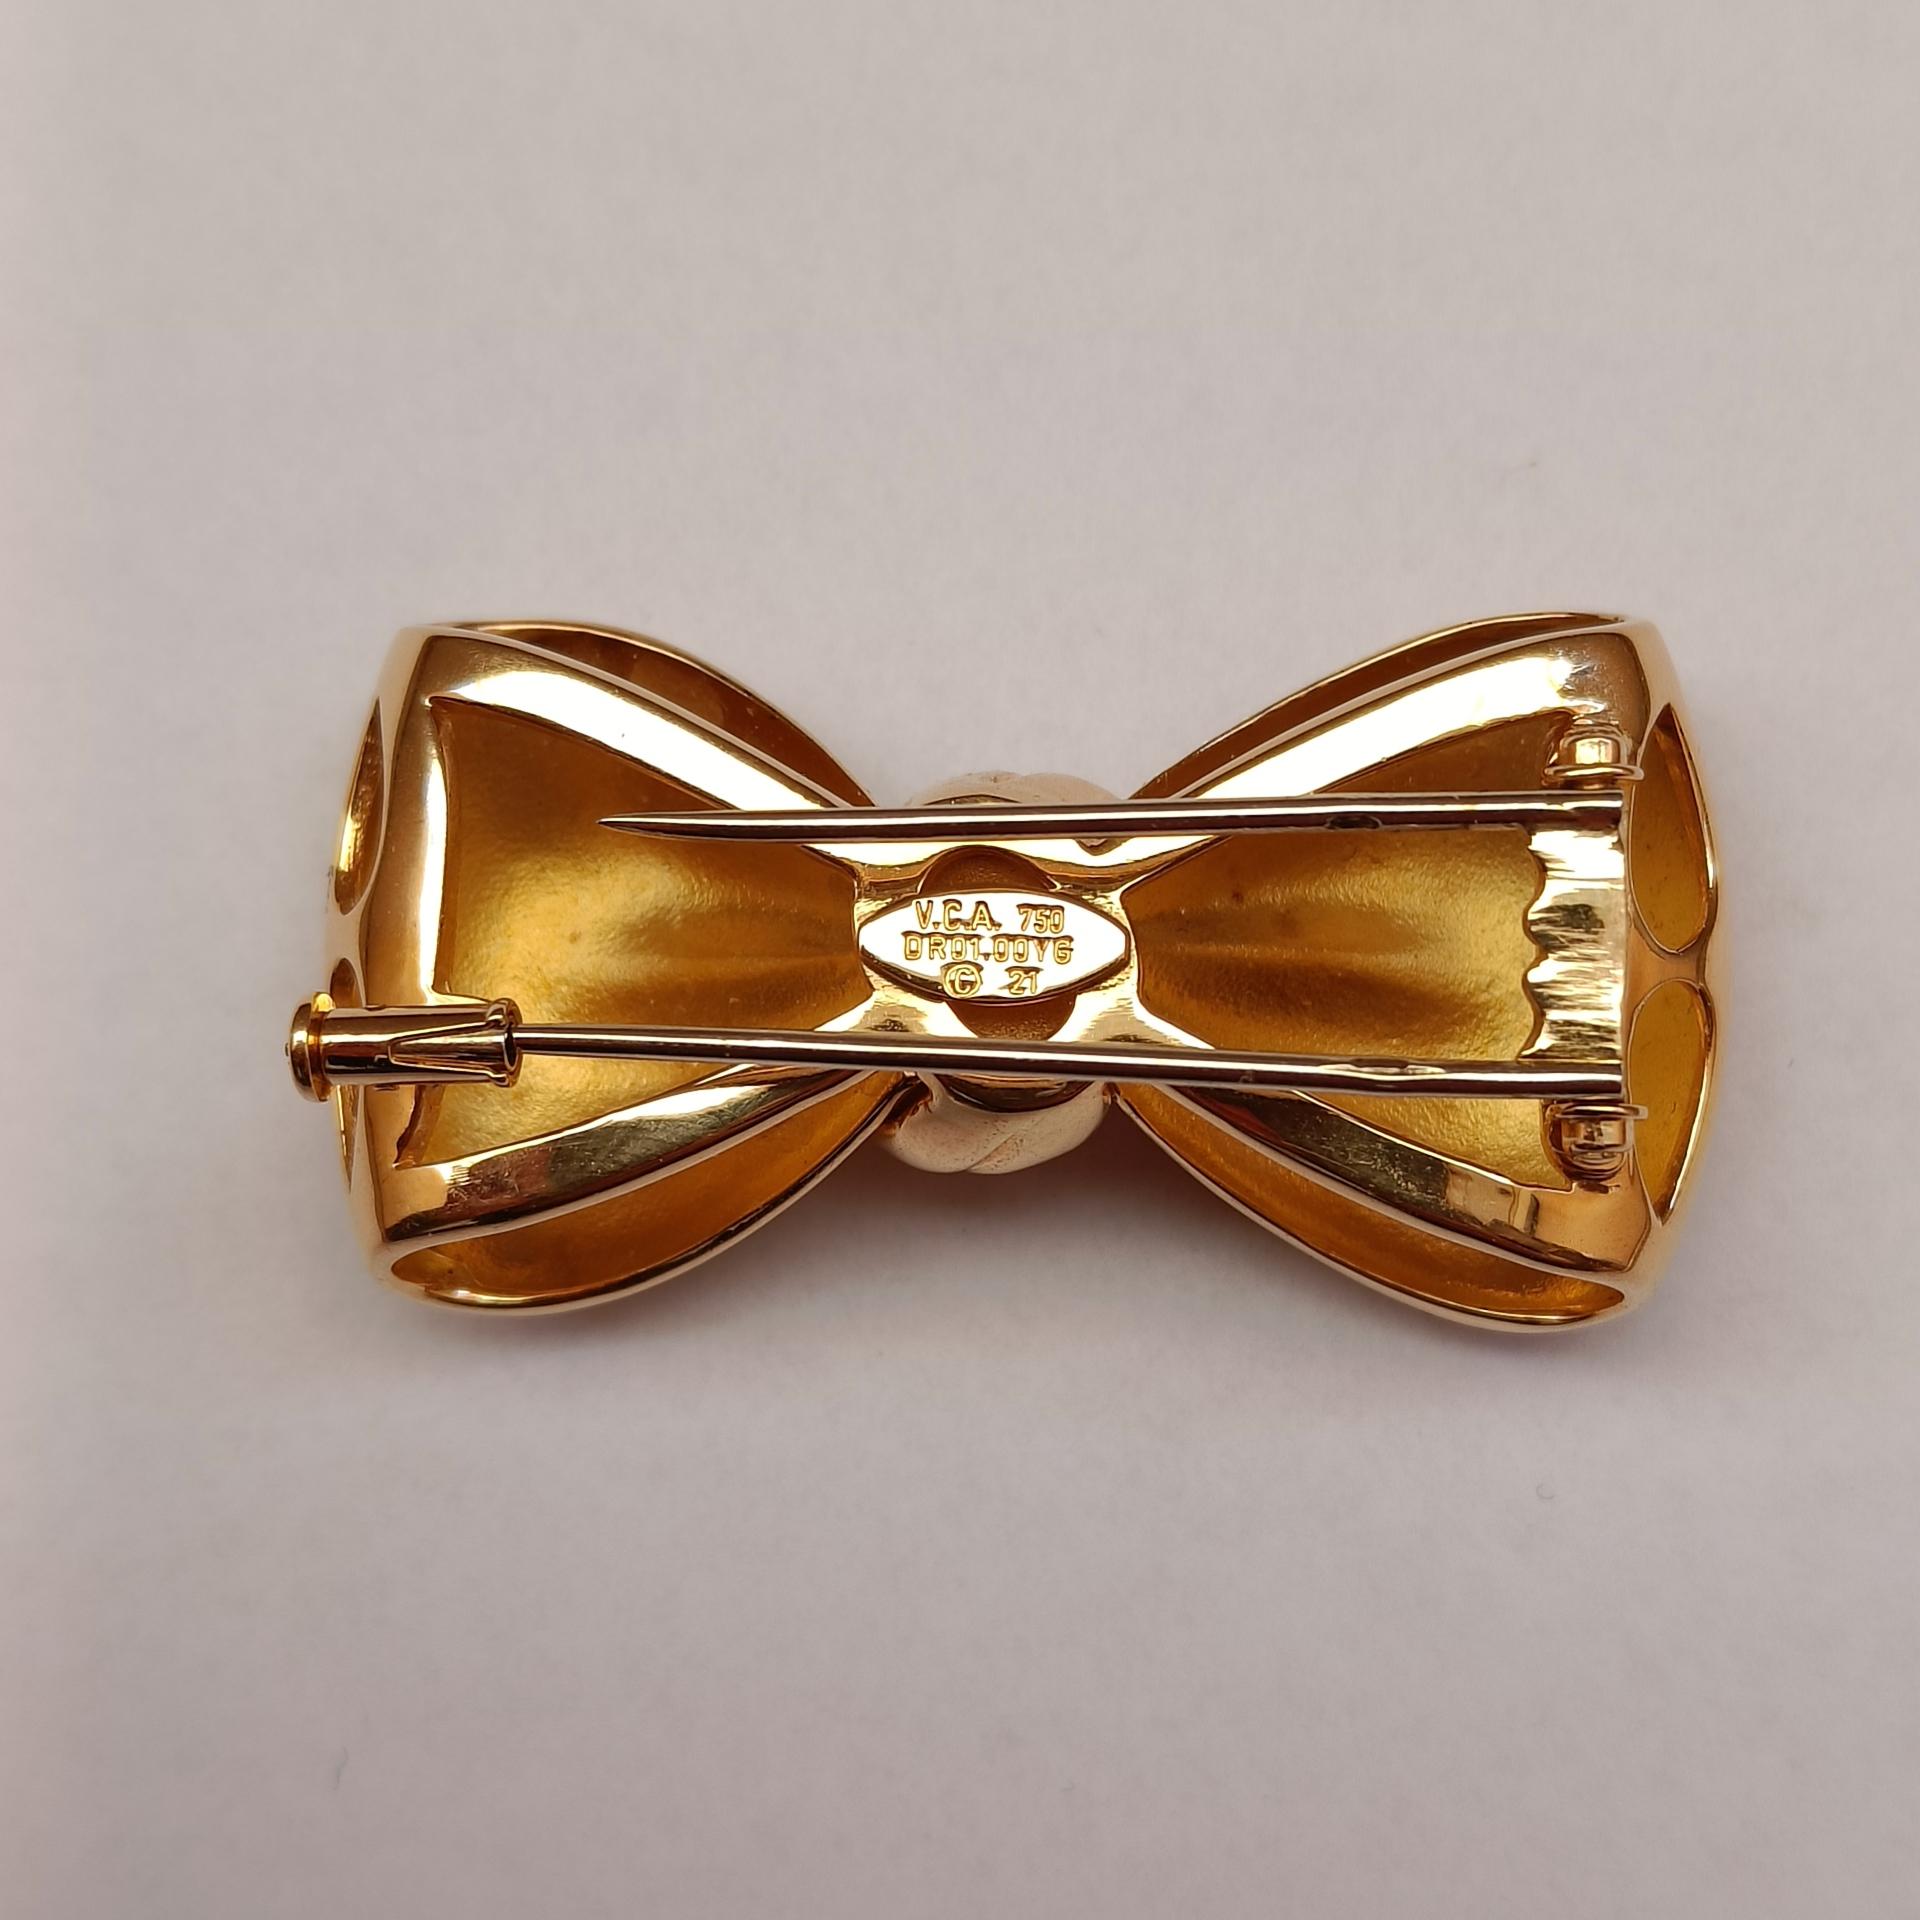 Van Cleef & Arpels 18k Gold Bow Clip Brooch For Sale 2